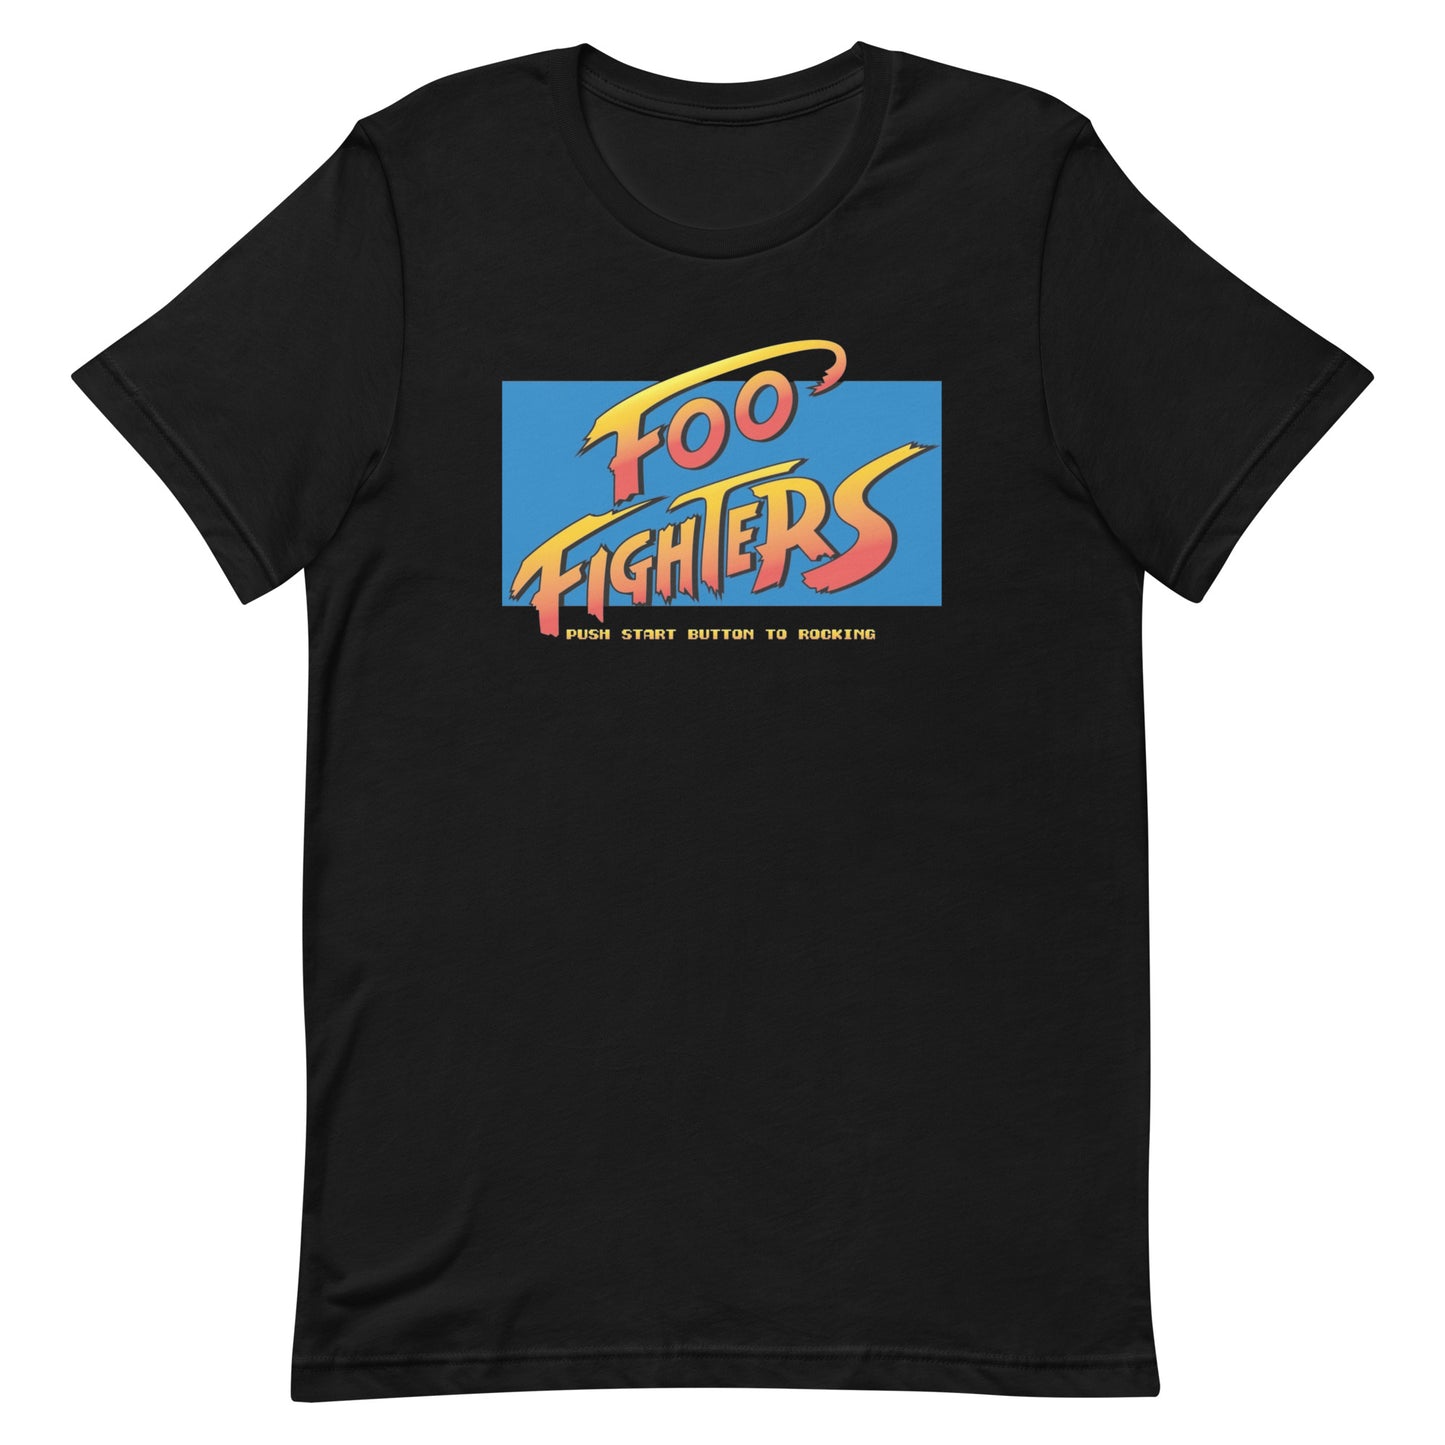 Playera Street Foo Fighters la encuentras en Superstar, vístete como un verdadero #Rockstar y encuentra tu estilo en nuestra tienda Online.